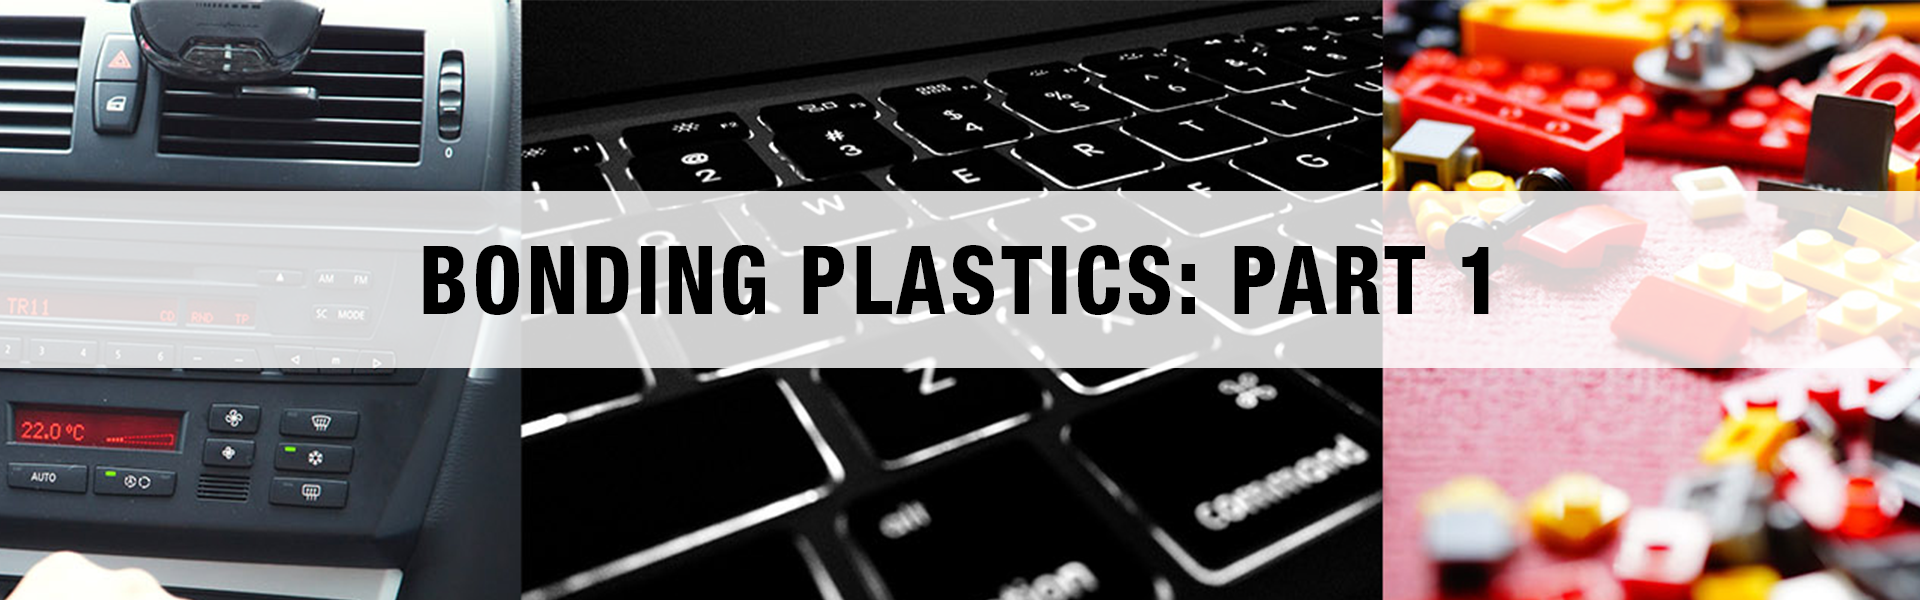 Bonding to Plastics: Part 1